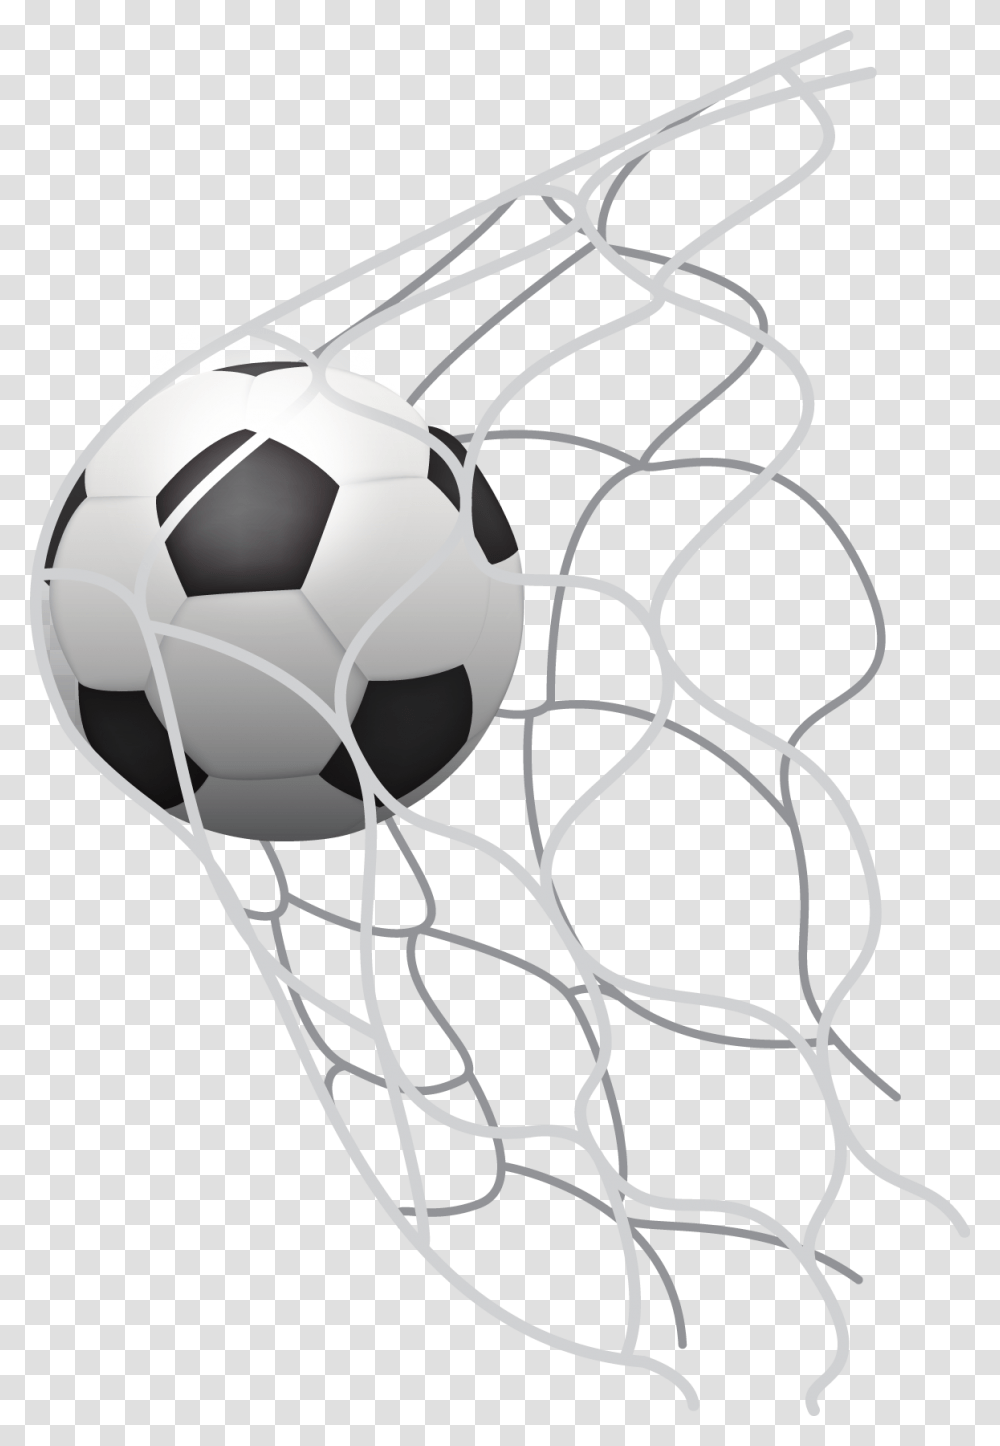 Volleyball Net Clipart Soccer Net, Soccer Ball, Football, Team Sport, Sports Transparent Png